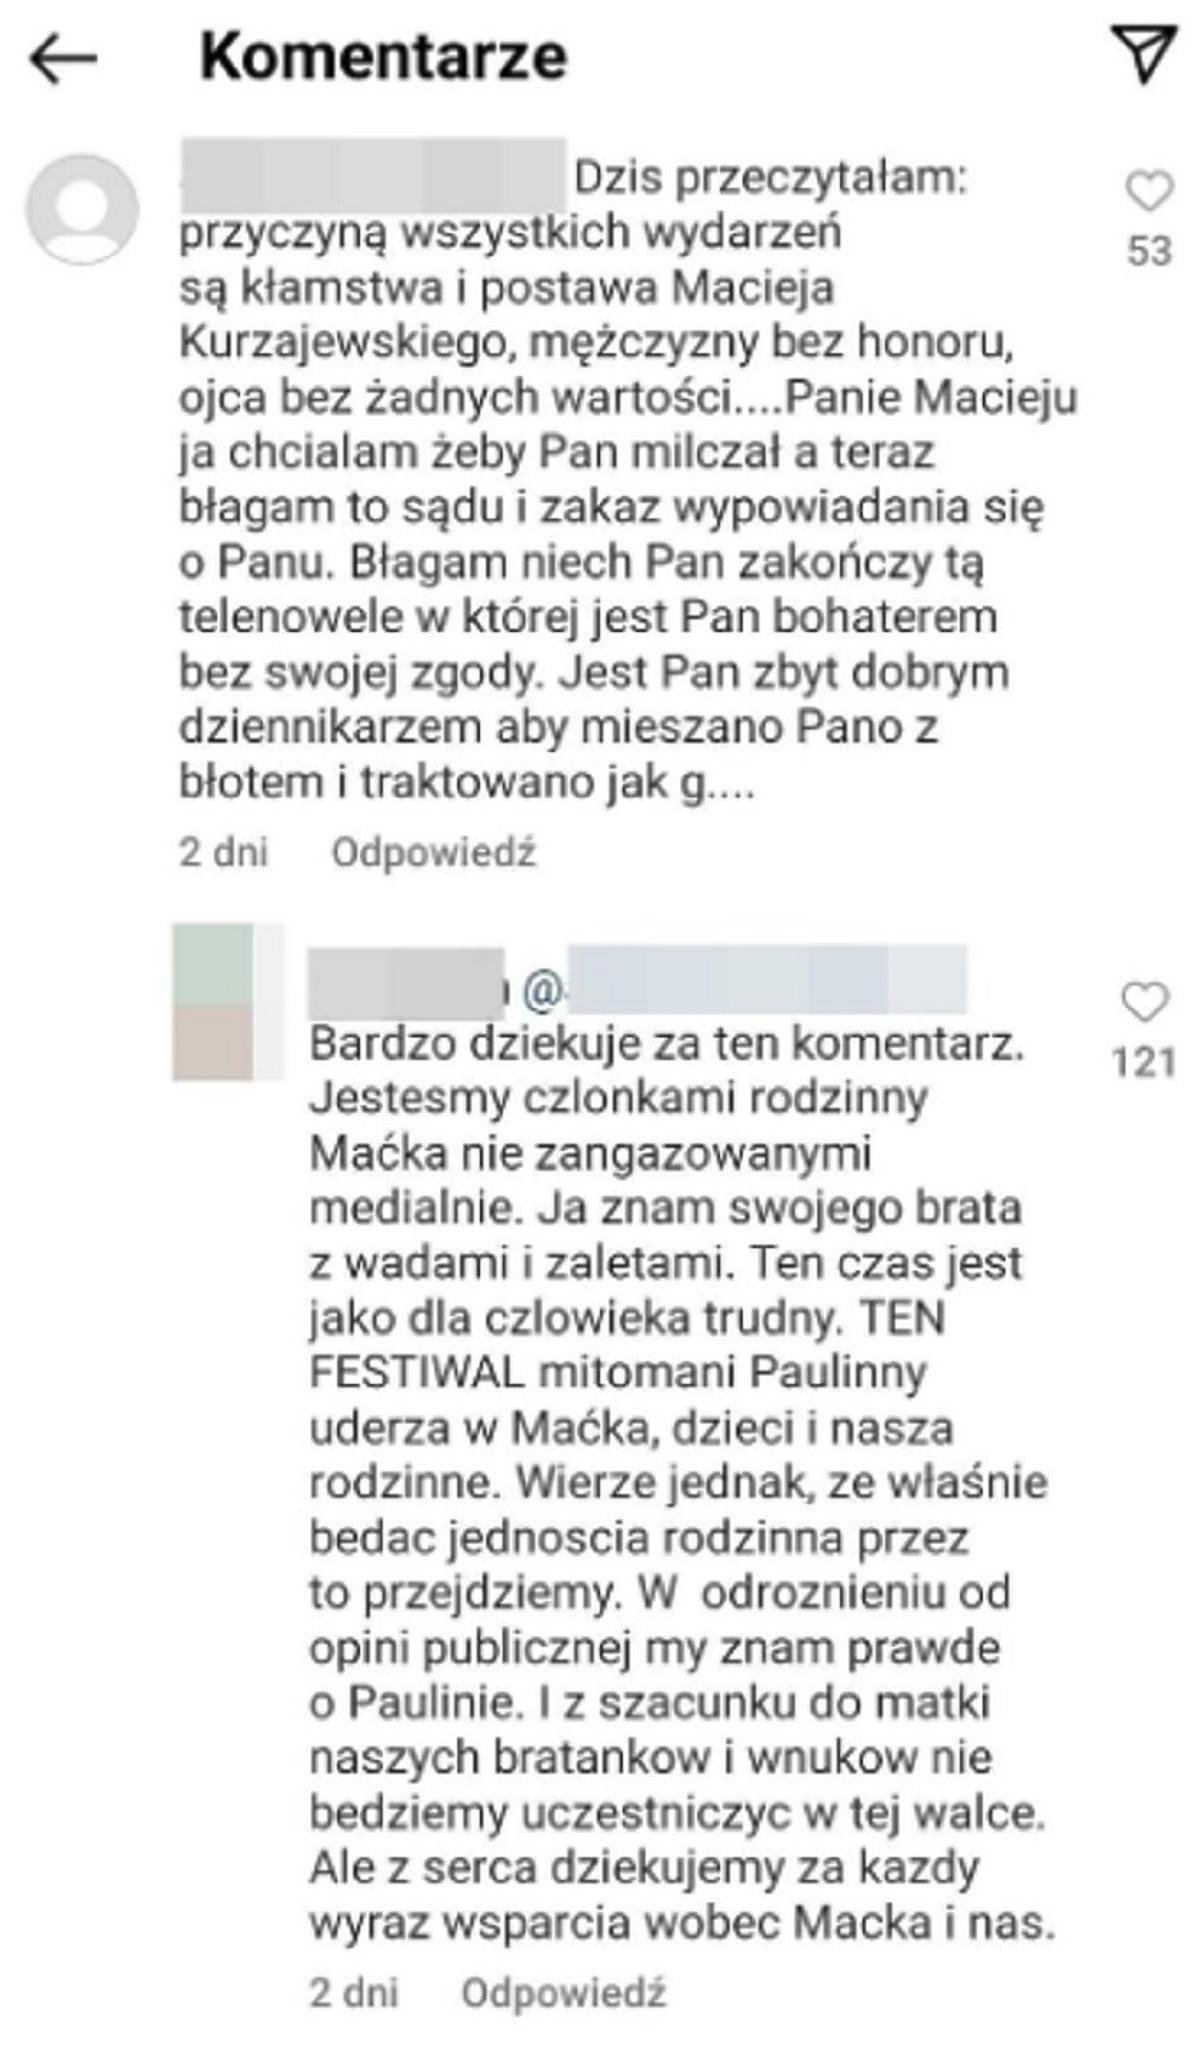 Komentarz pod postem Macieja Kurzajewskiego